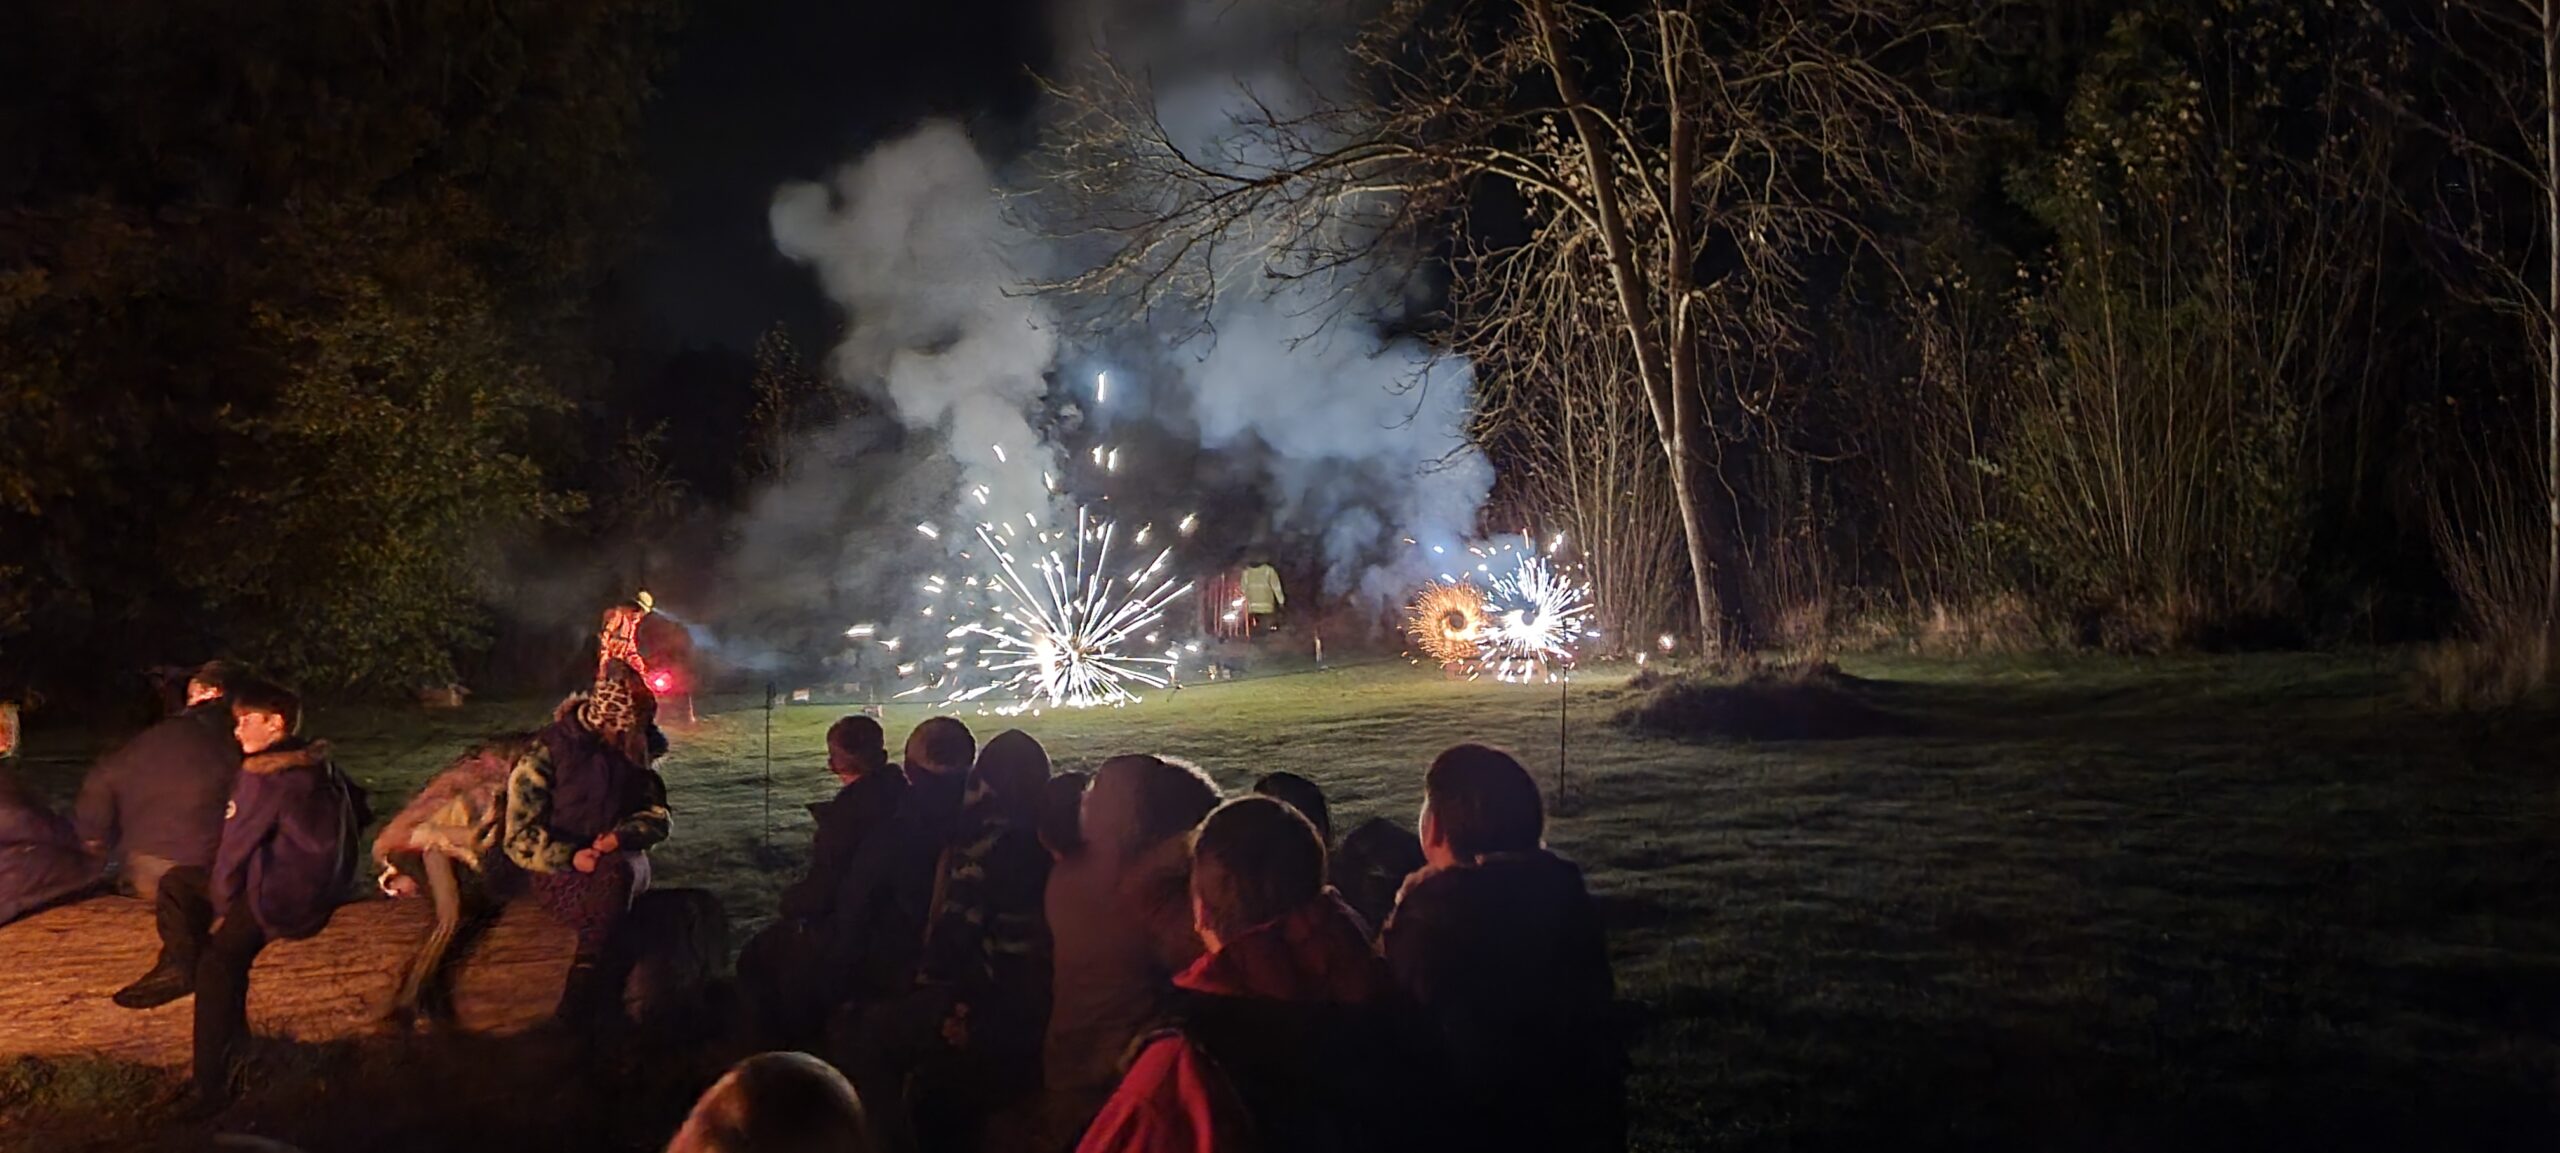 Fireworks, Bonfire, Sparklers & Marsh Mellows – November 2021